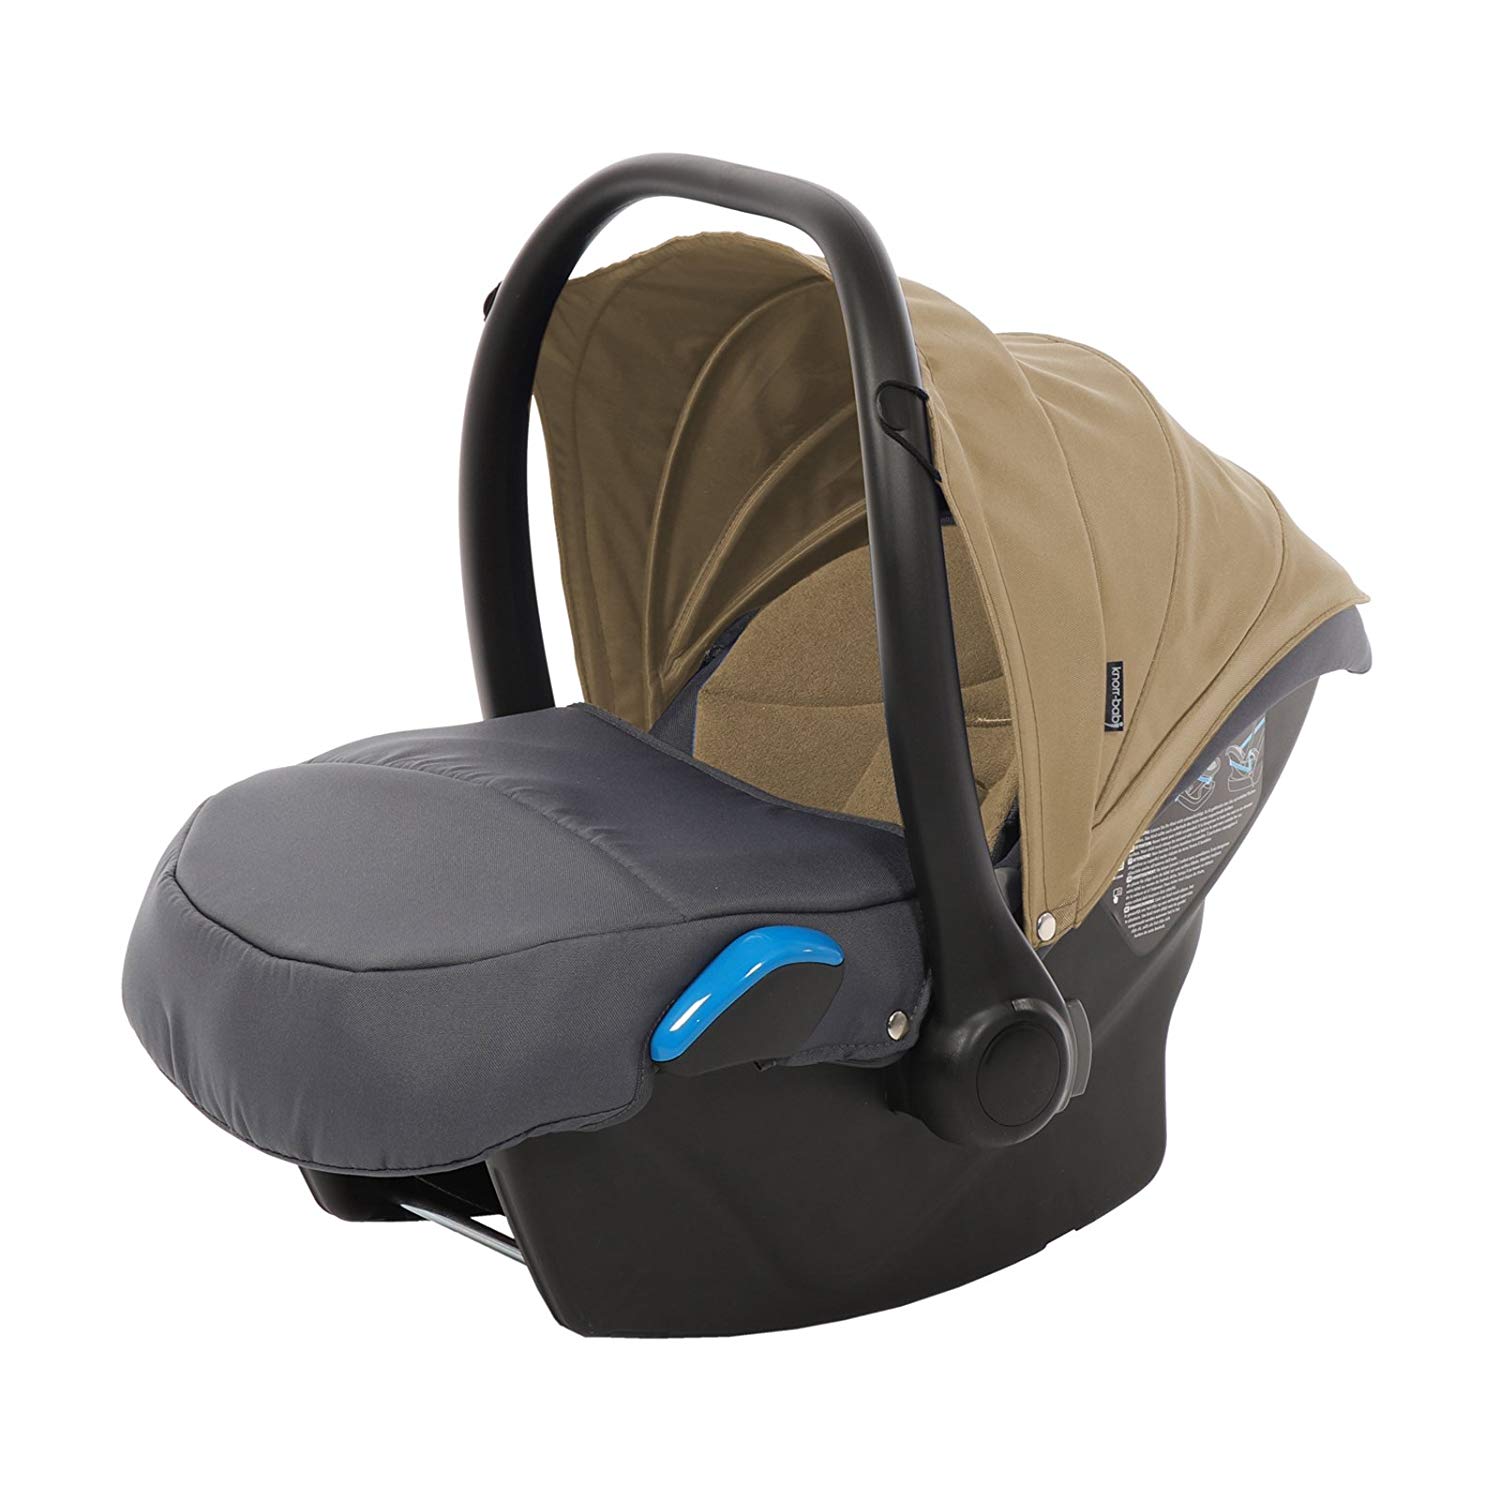 Knorr-Baby 3171 – 5 Baby Car Seat Voletto Sport Milan to Grey/Beige